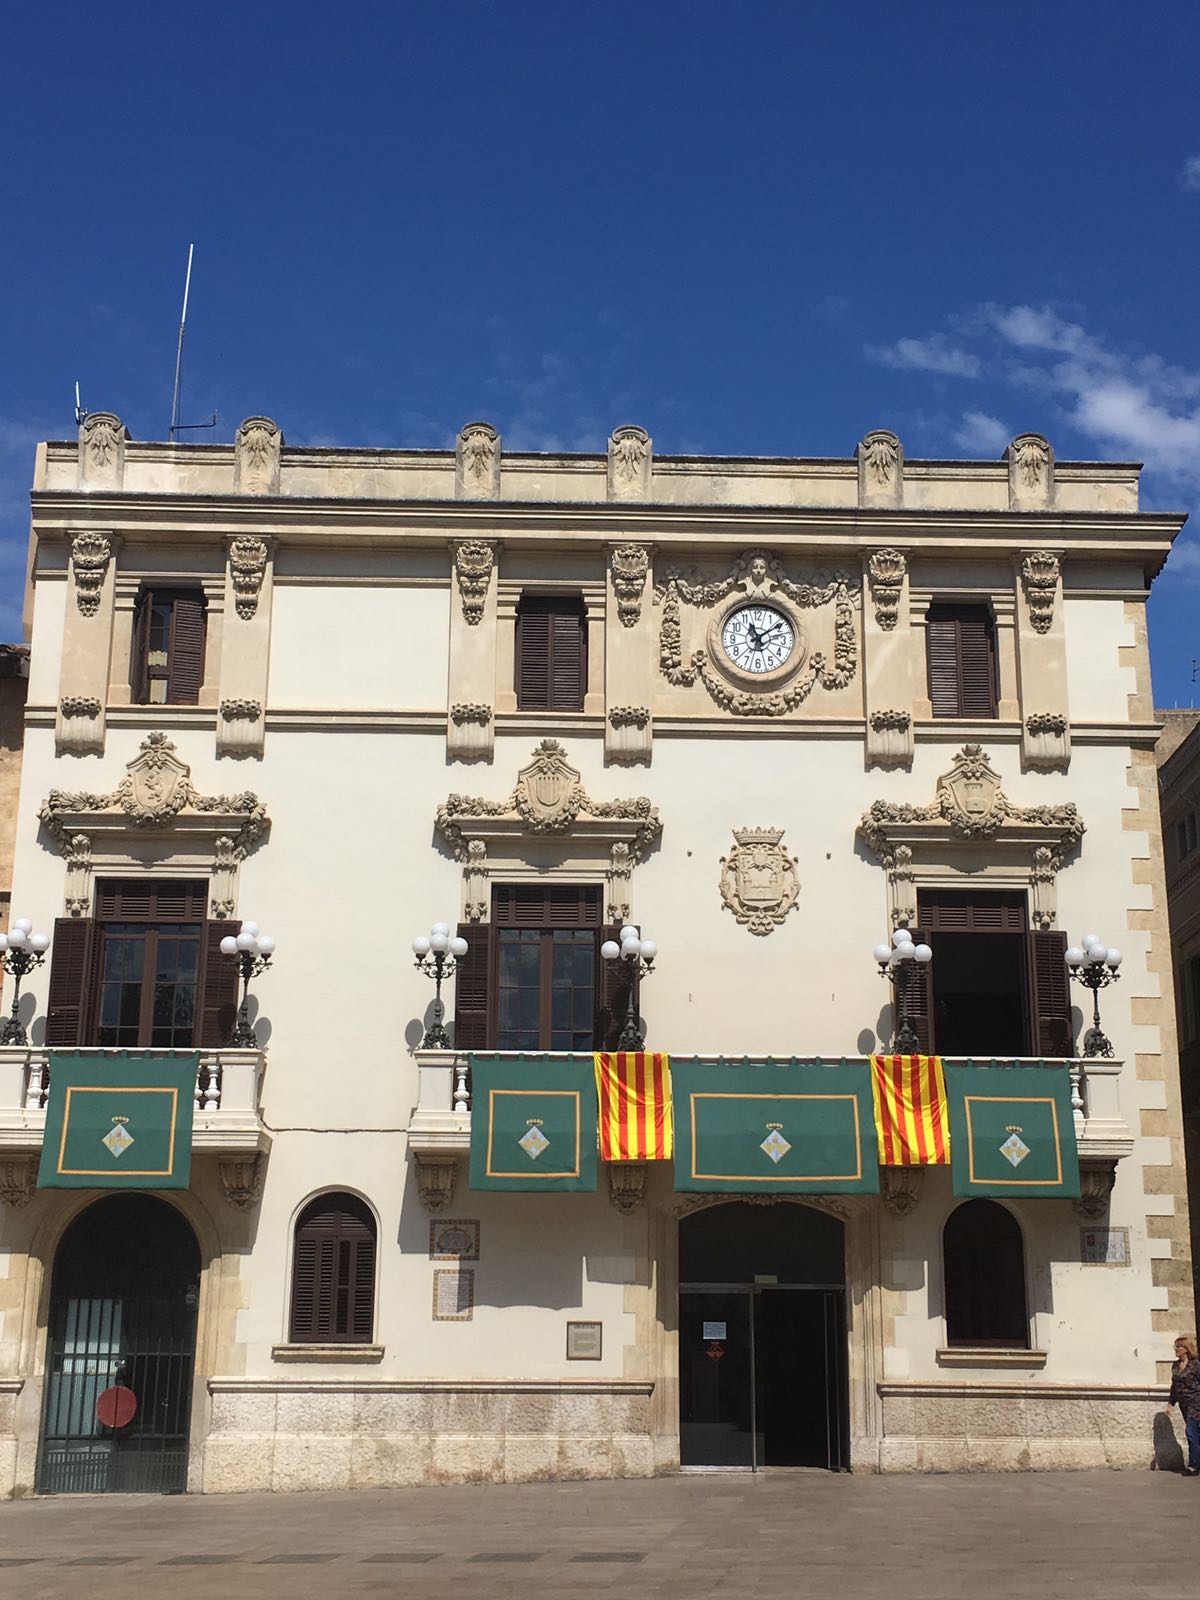 Torna a desaparèixer la bandera espanyola de l'Ajuntament de Vilafranca